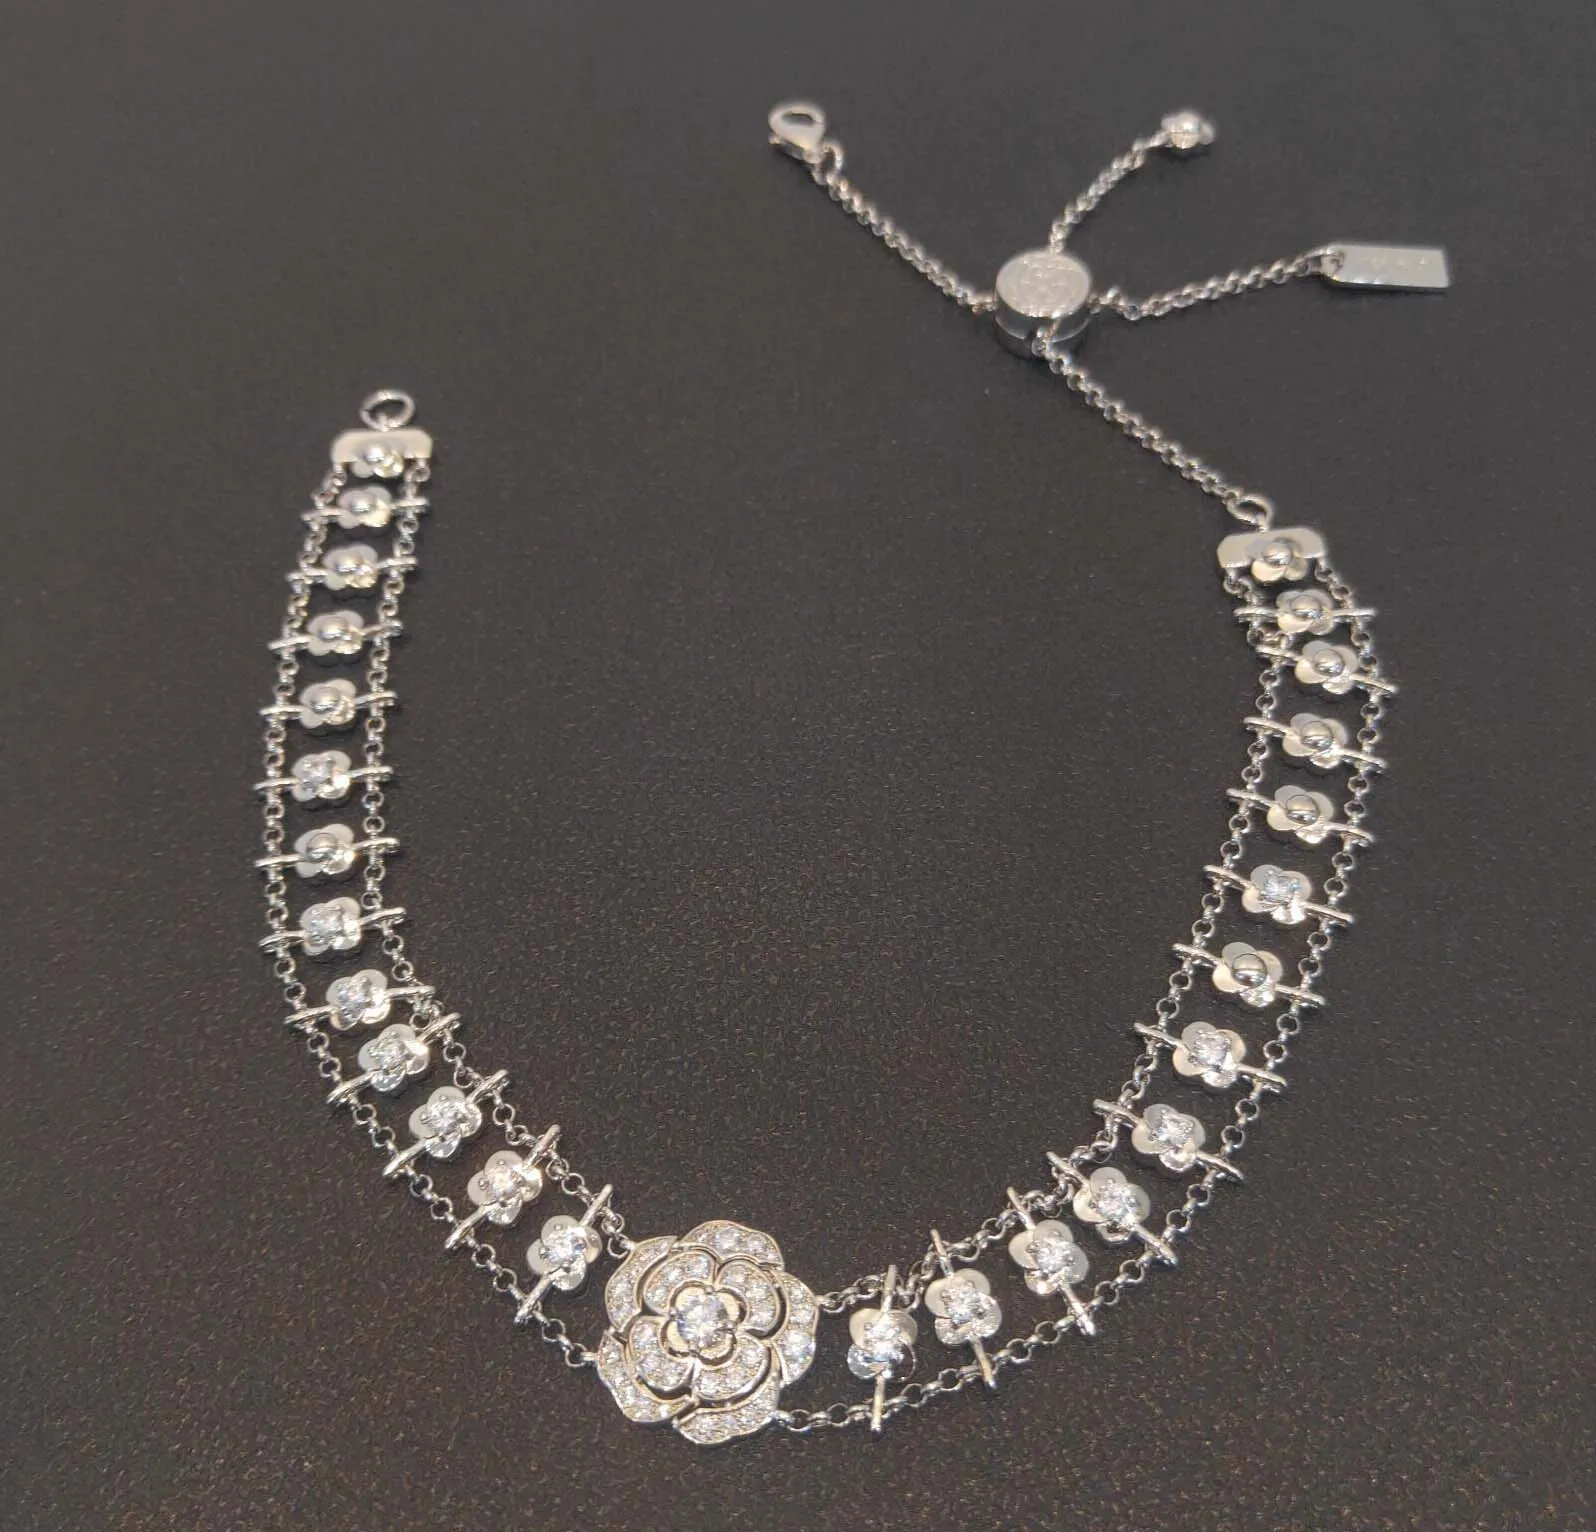 2022 Bracelet punk de charme de qualité supérieure et collier pendant avec des fleurs Diamants pour femmes Gift de mariage Jewelr ont une boîte Stamp335a